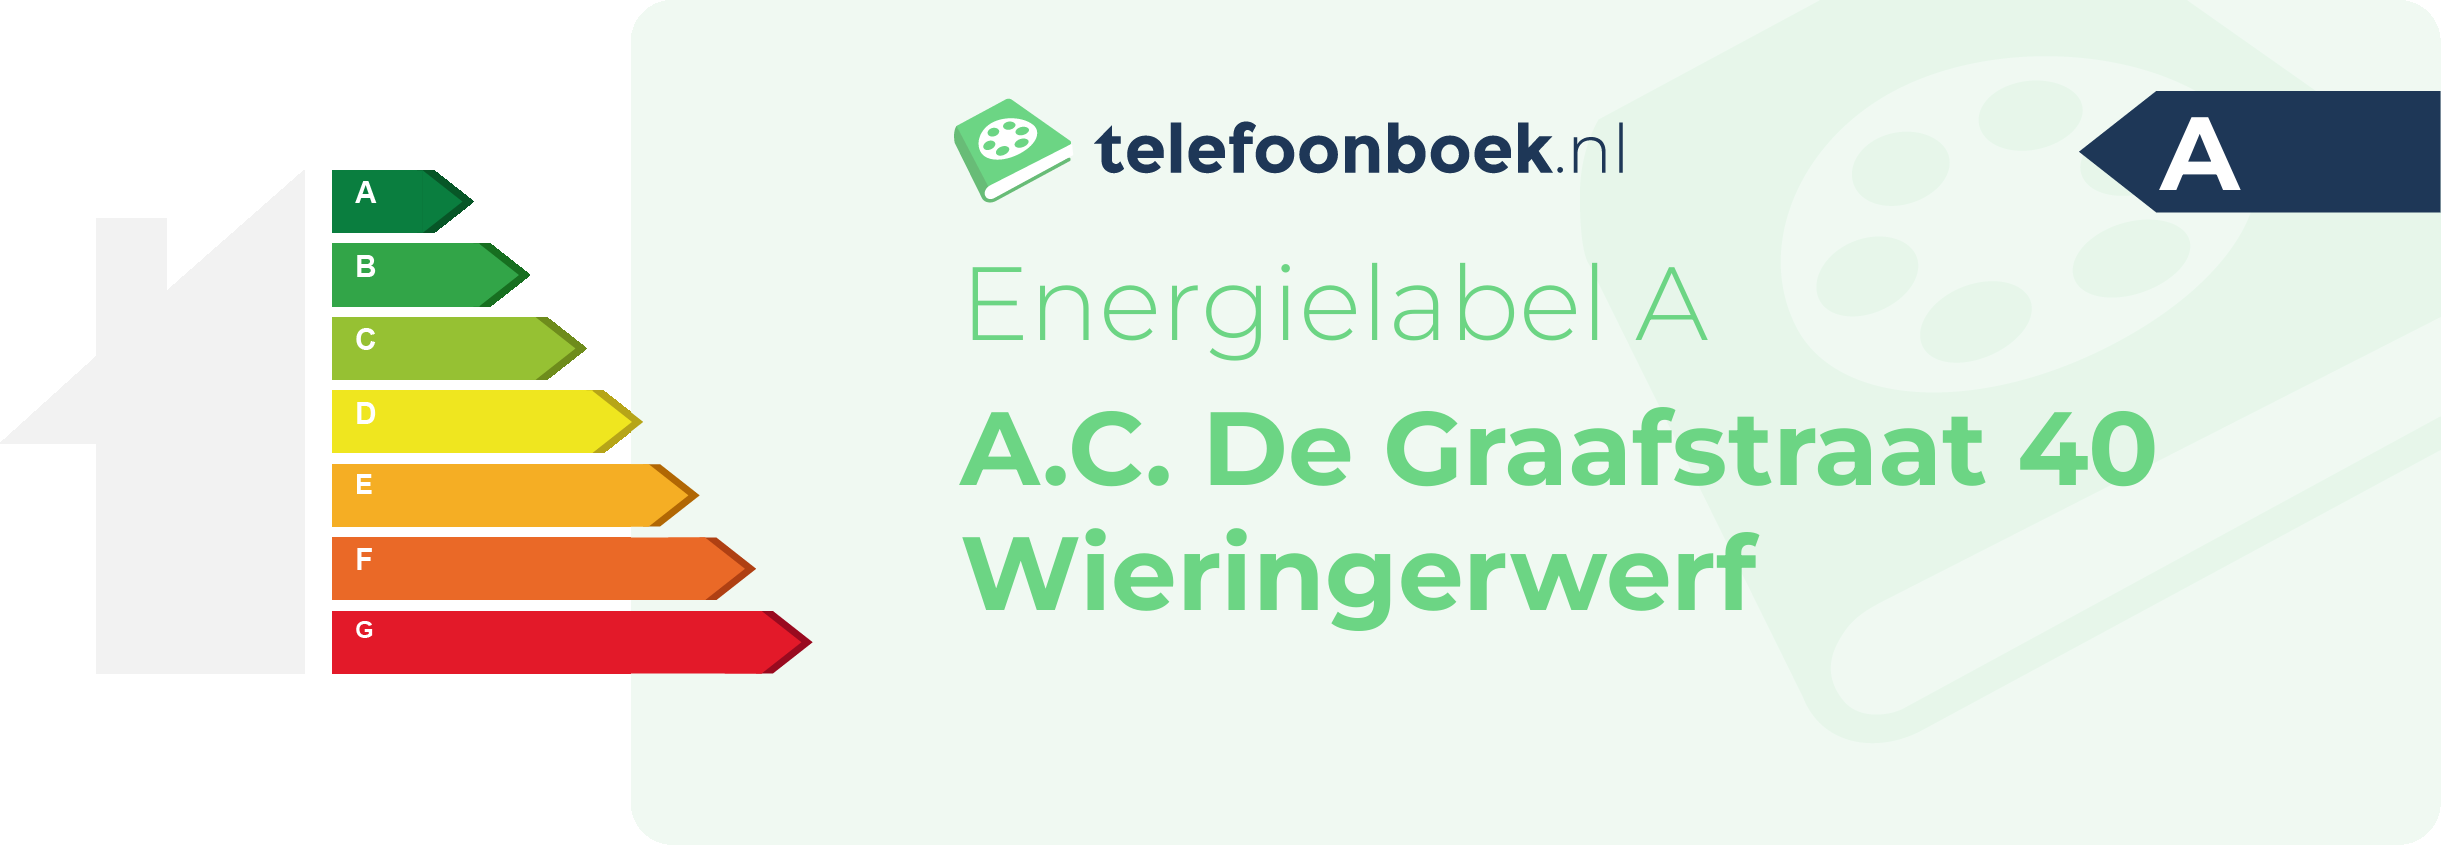 Energielabel A.C. De Graafstraat 40 Wieringerwerf